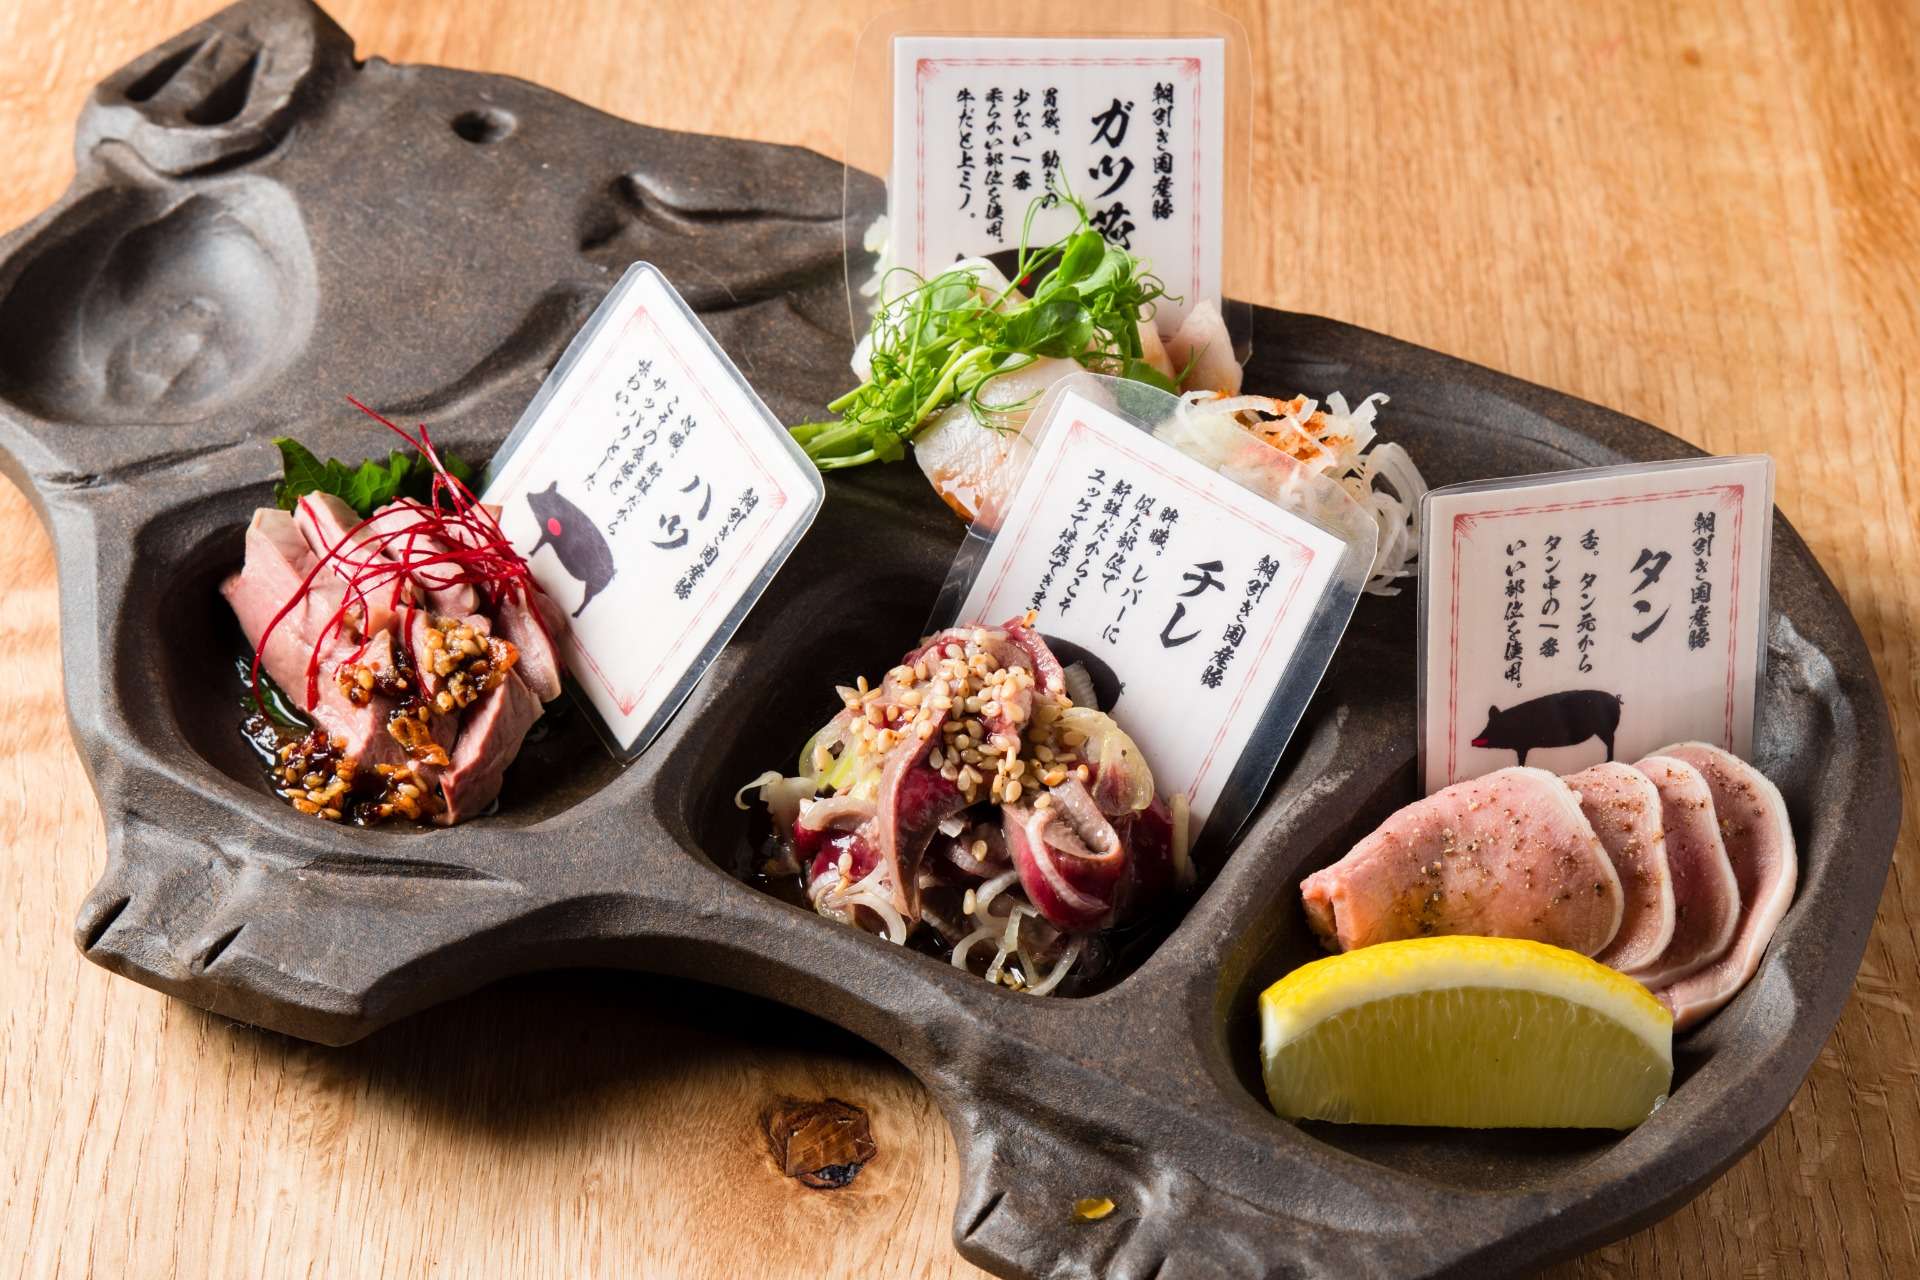 こだわりの豚肉と美味しい日本酒をご提供しております